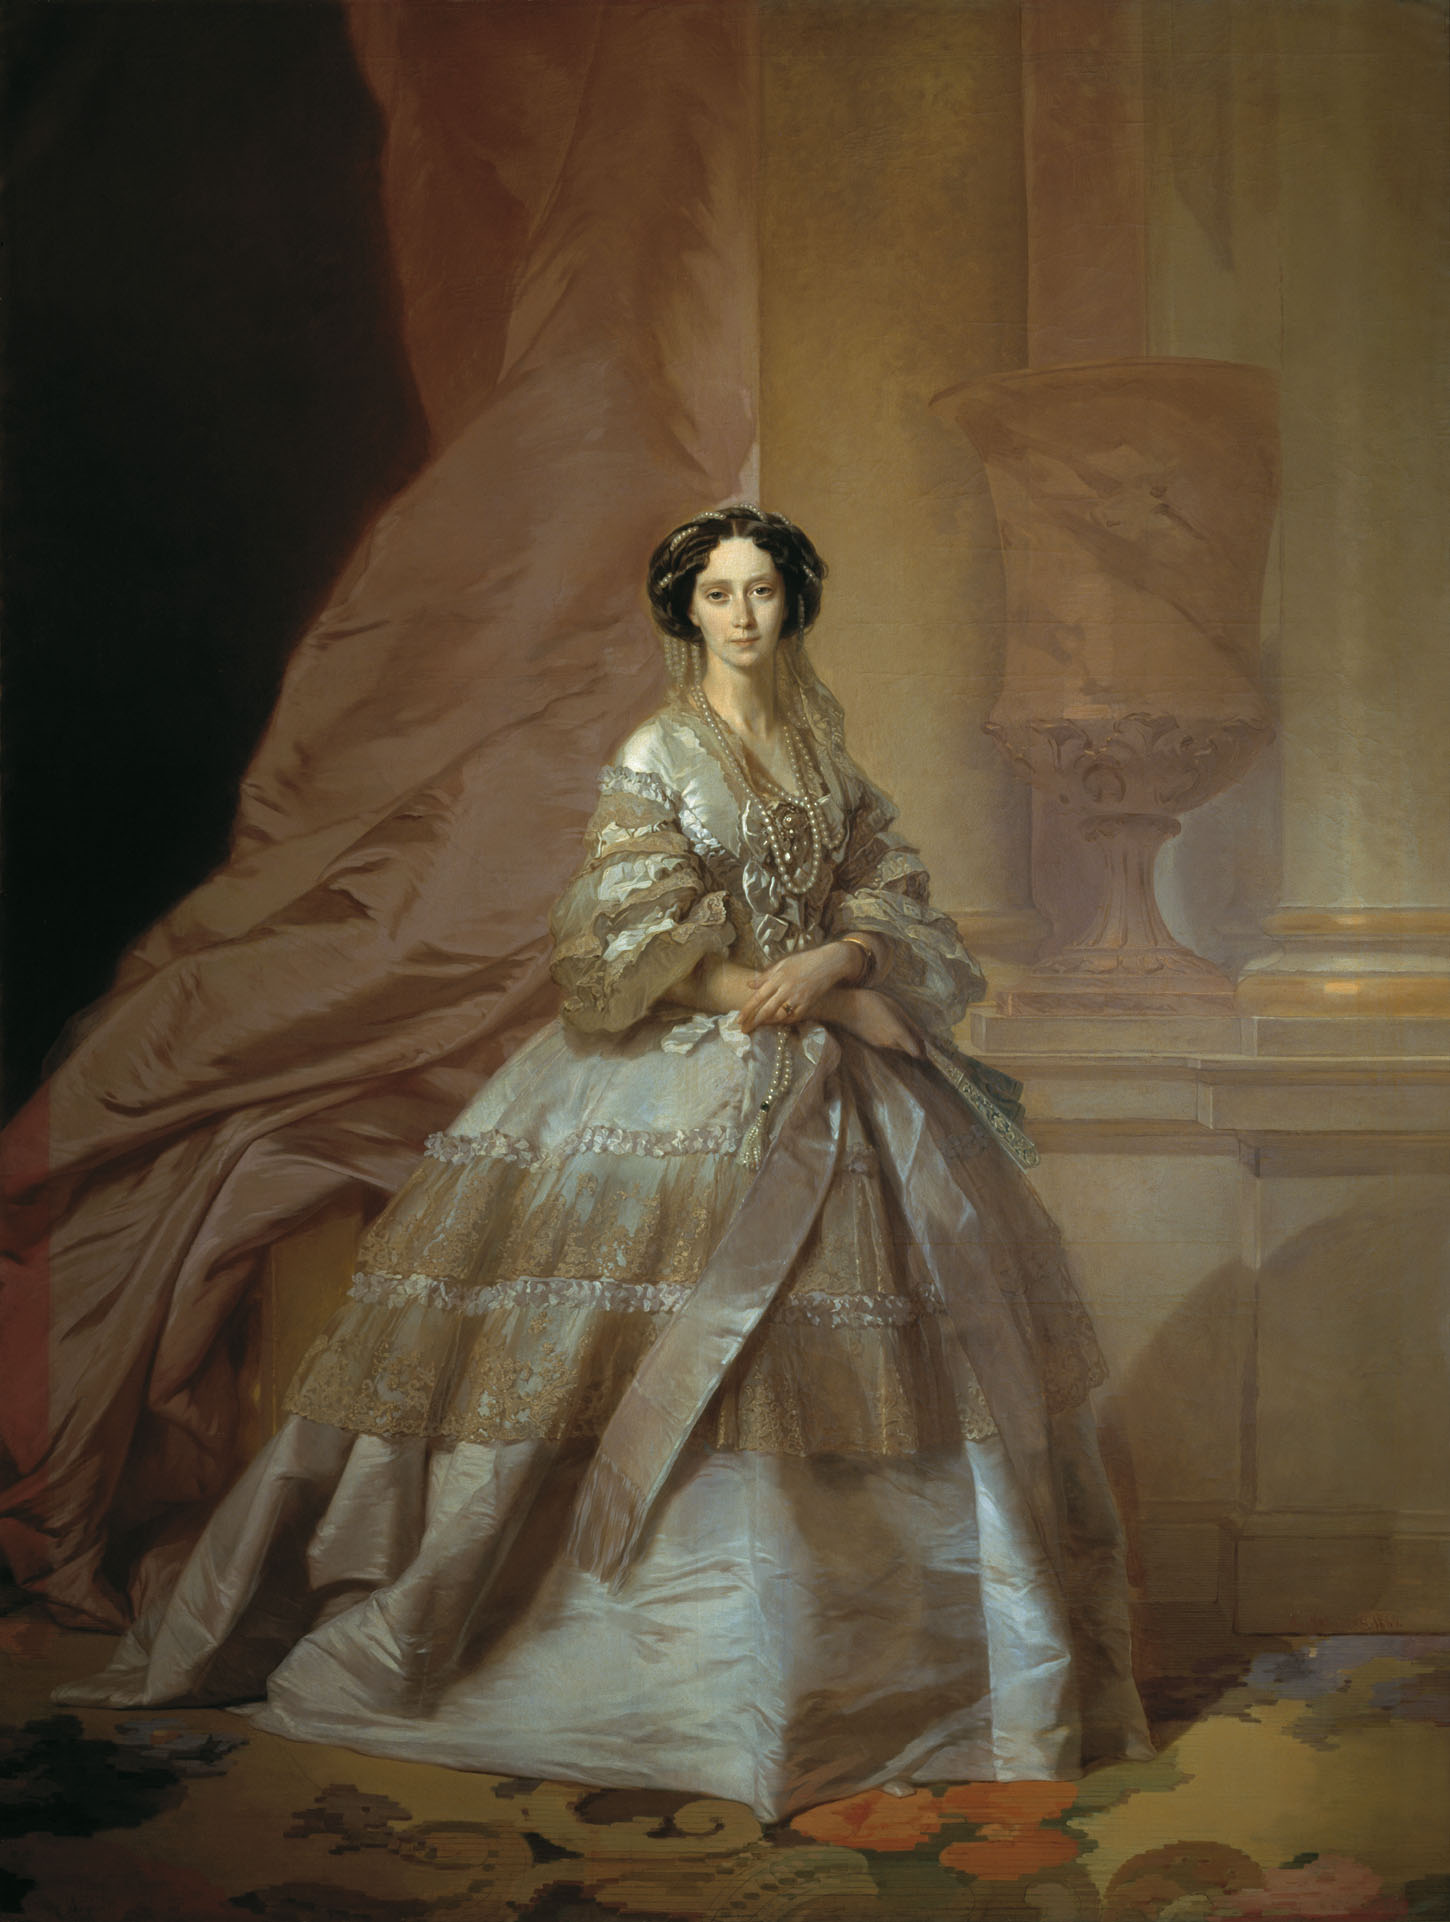 Макаров. Портрет императрицы Марии Александровны, жены Александра II. 1866